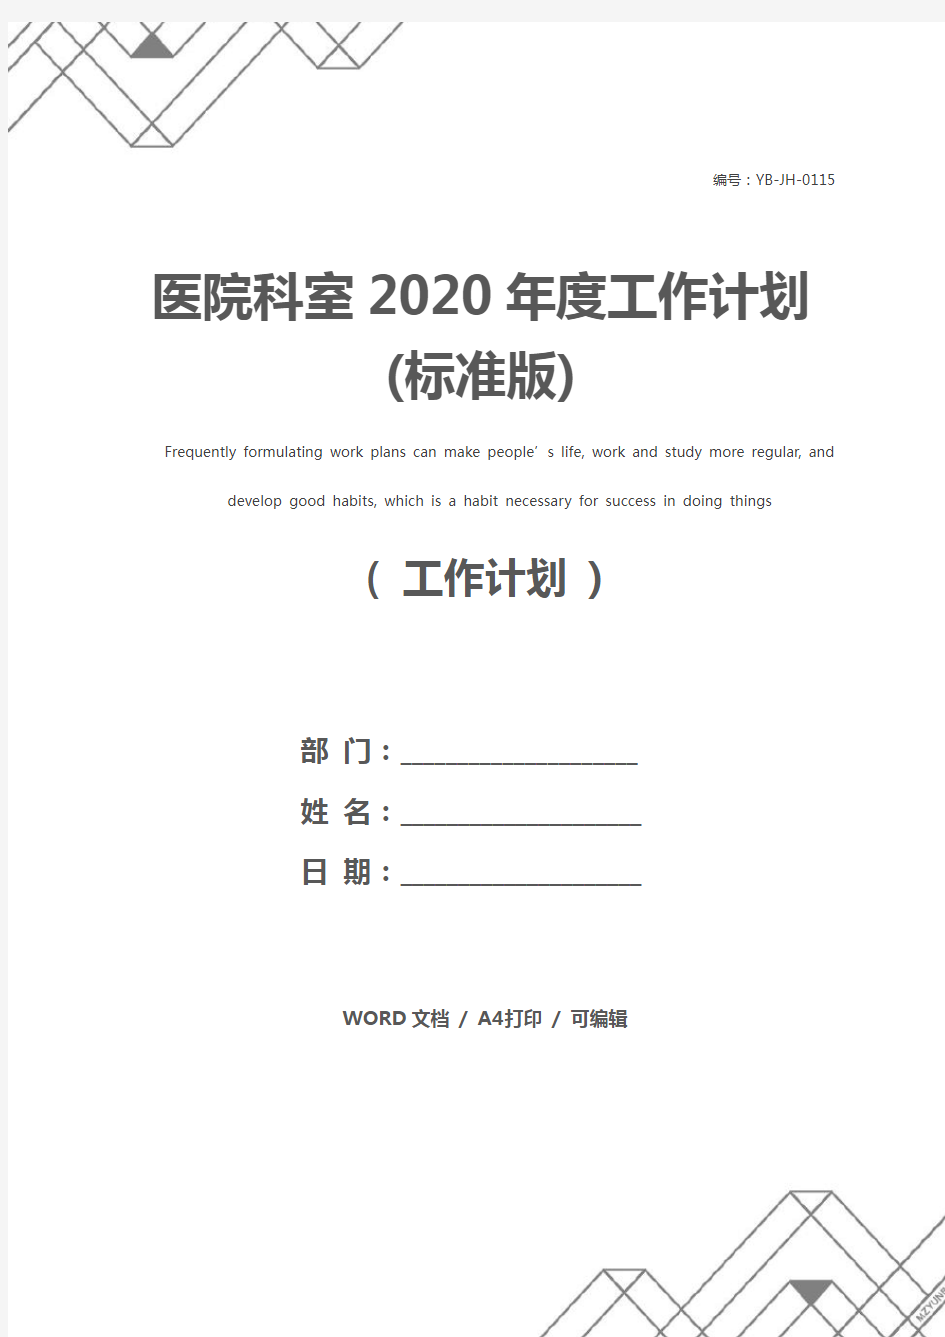 医院科室2020年度工作计划(标准版)